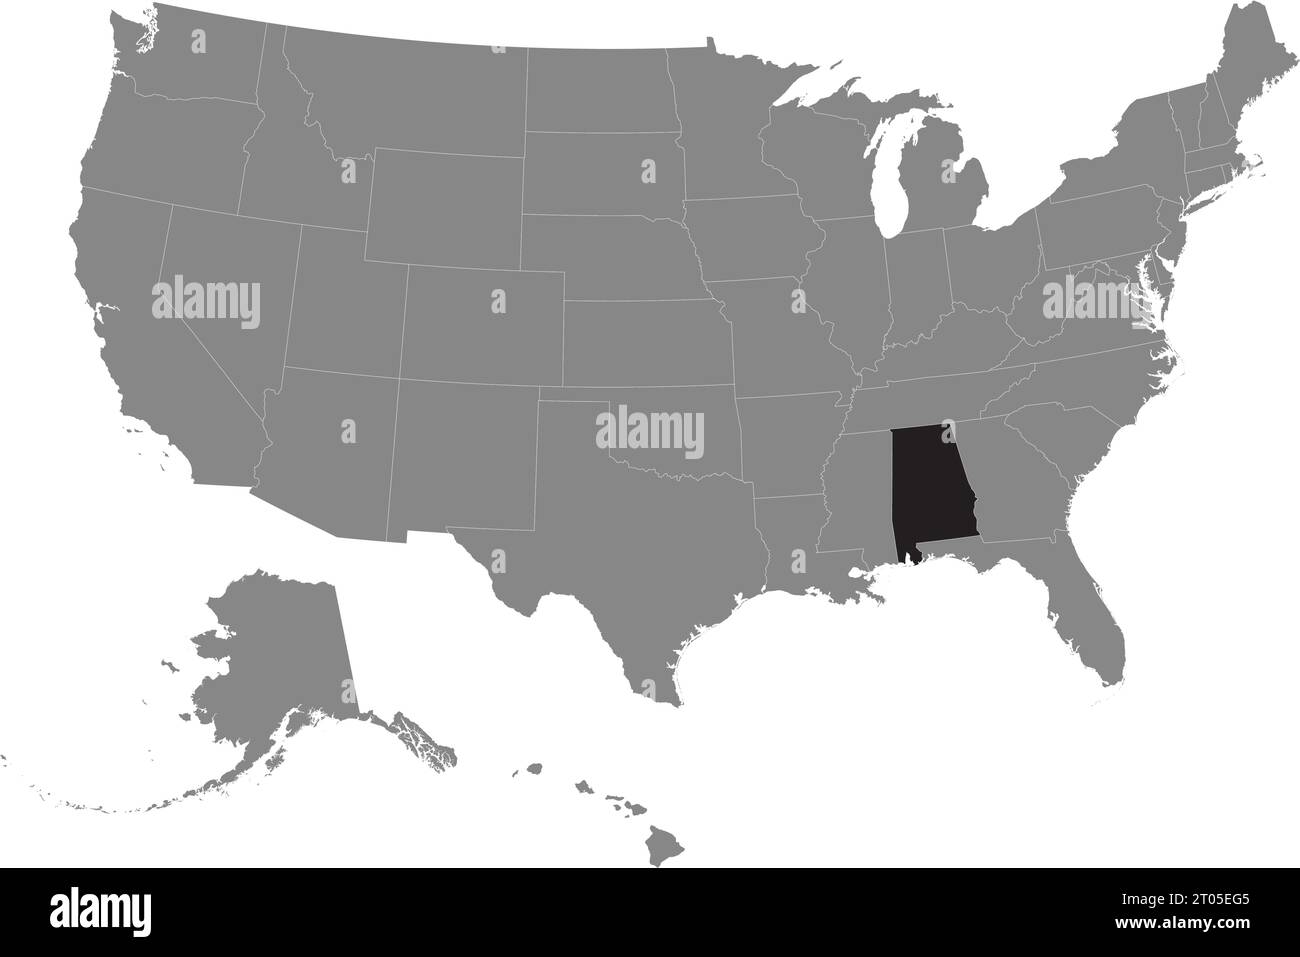 Schwarze CMYK-Bundeskarte von ALABAMA in detaillierter grauer, leerer politischer Karte der Vereinigten Staaten von Amerika auf transparentem Hintergrund Stock Vektor